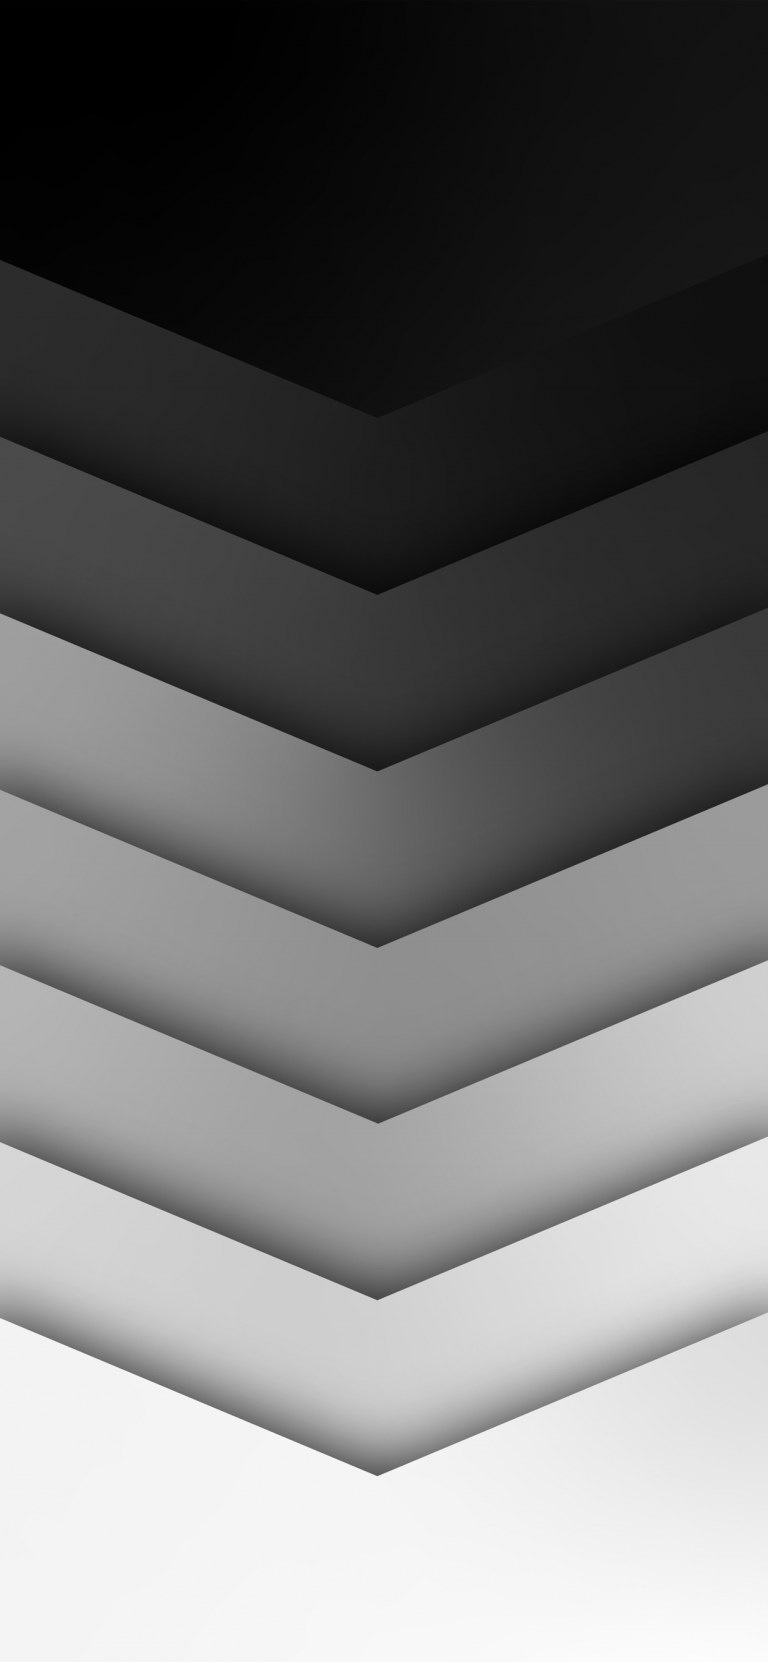 Dark Texture Wallpaper for iPhone - Geek Tech Online